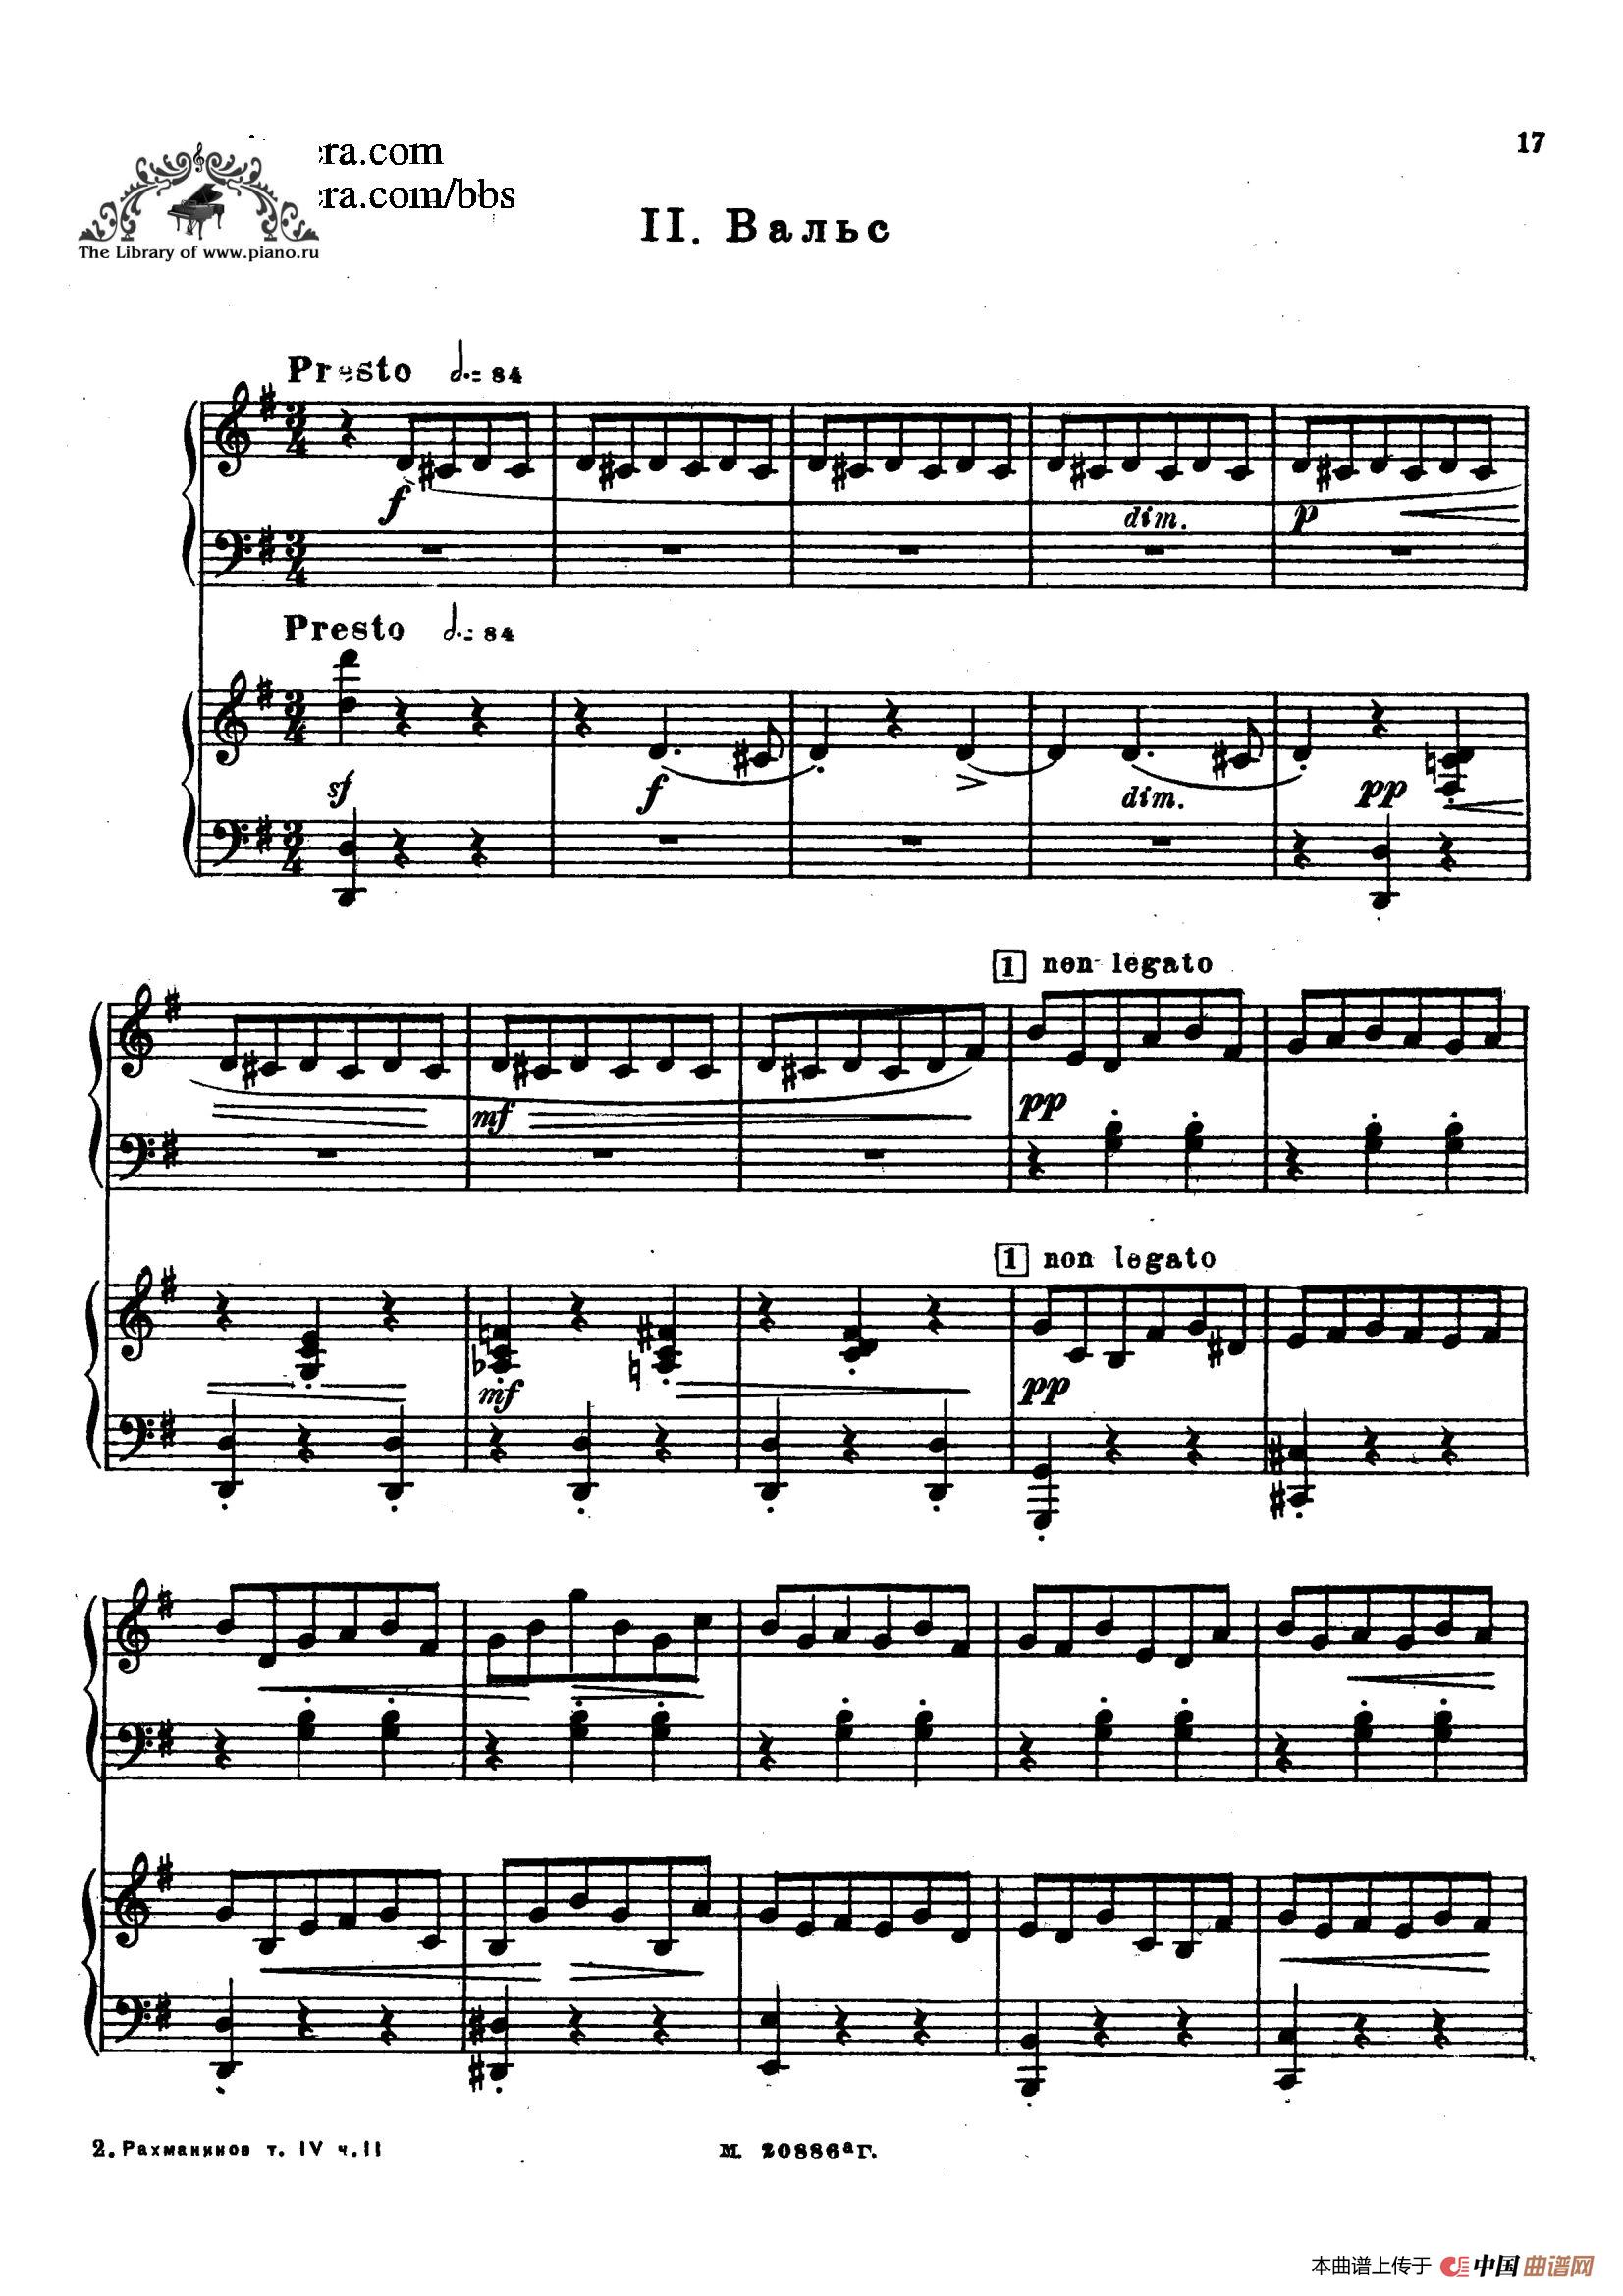 曲谱钢琴低音_钢琴低音谱表对照表